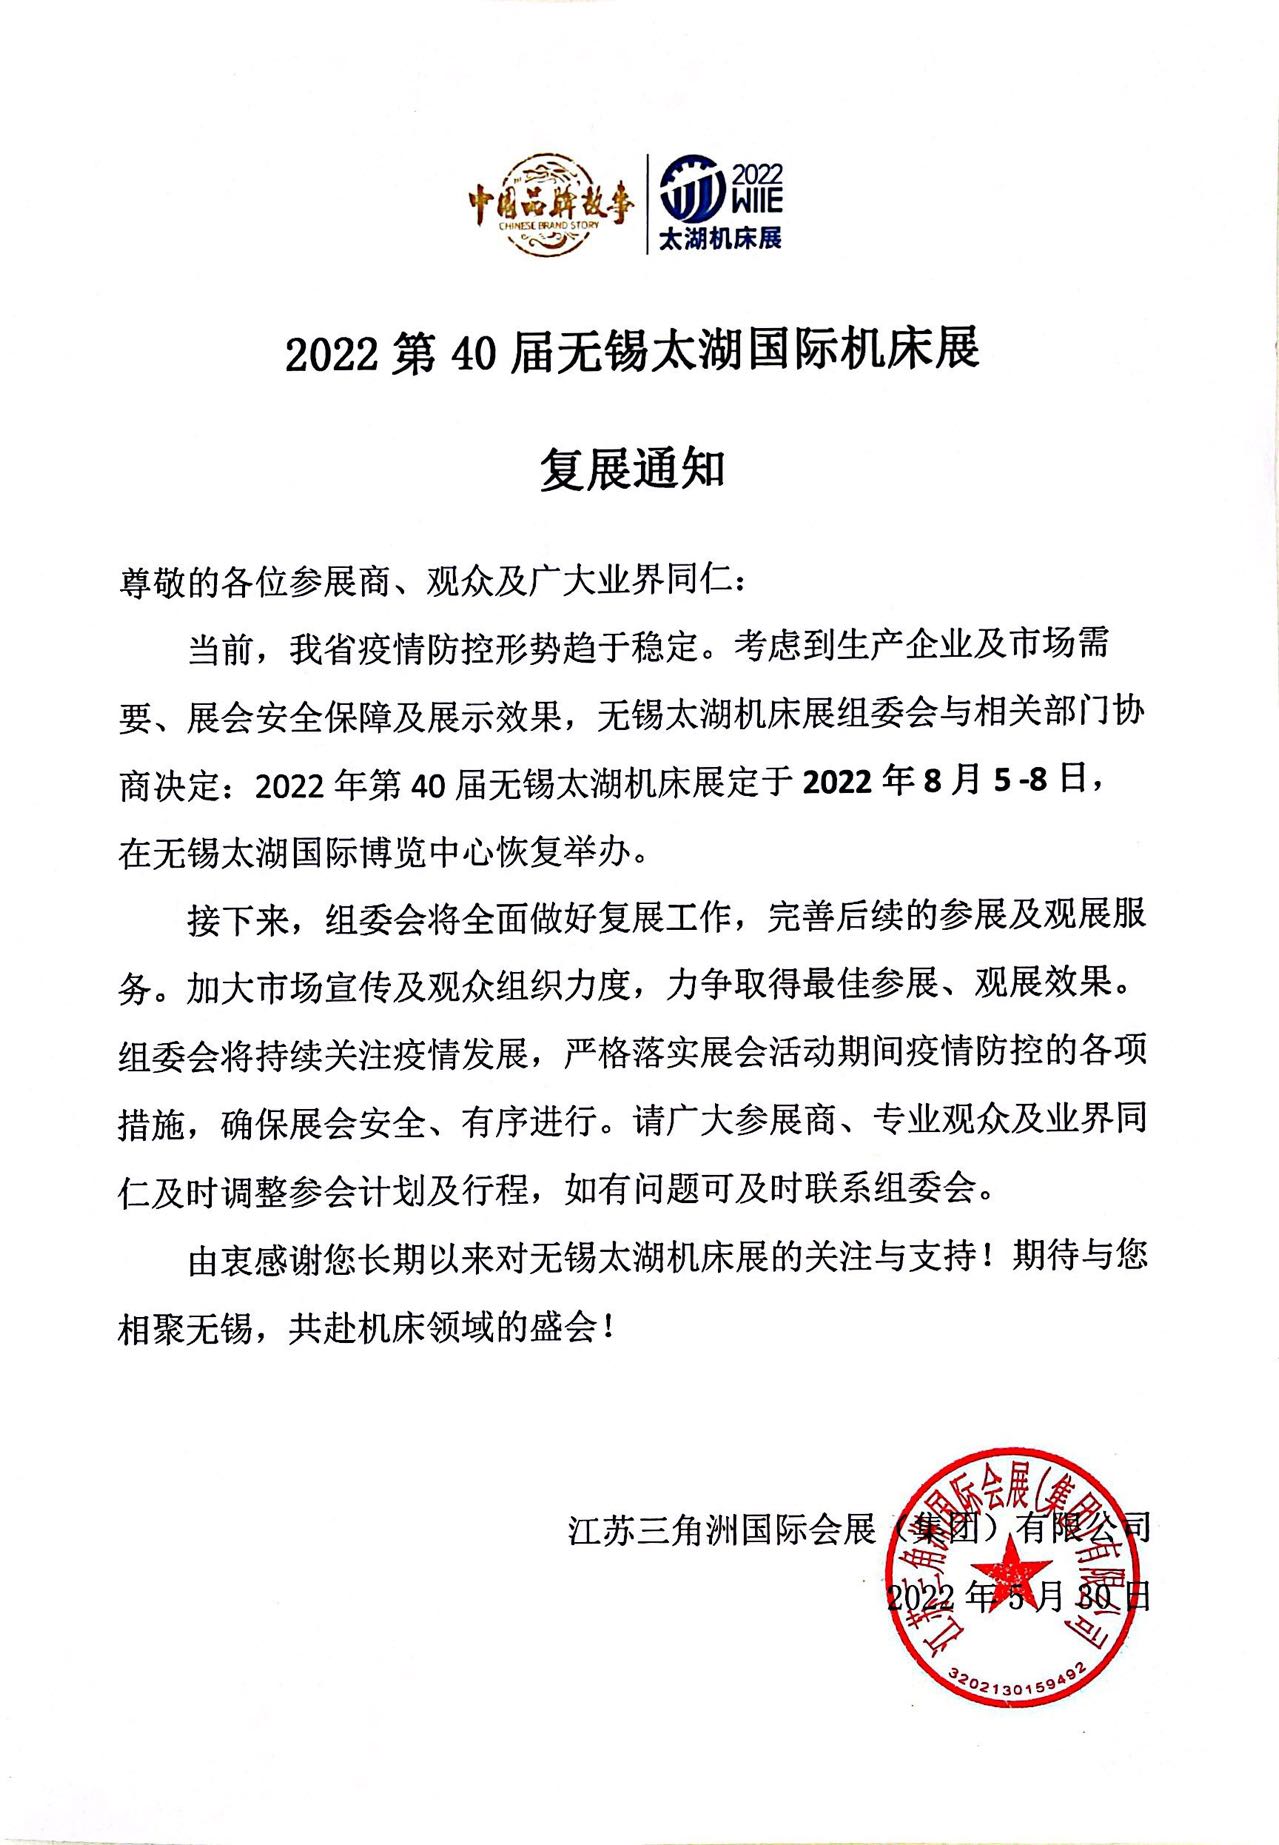 重要通知 | 2022第40届无锡太湖国际机床展8月5-8日恢复举办